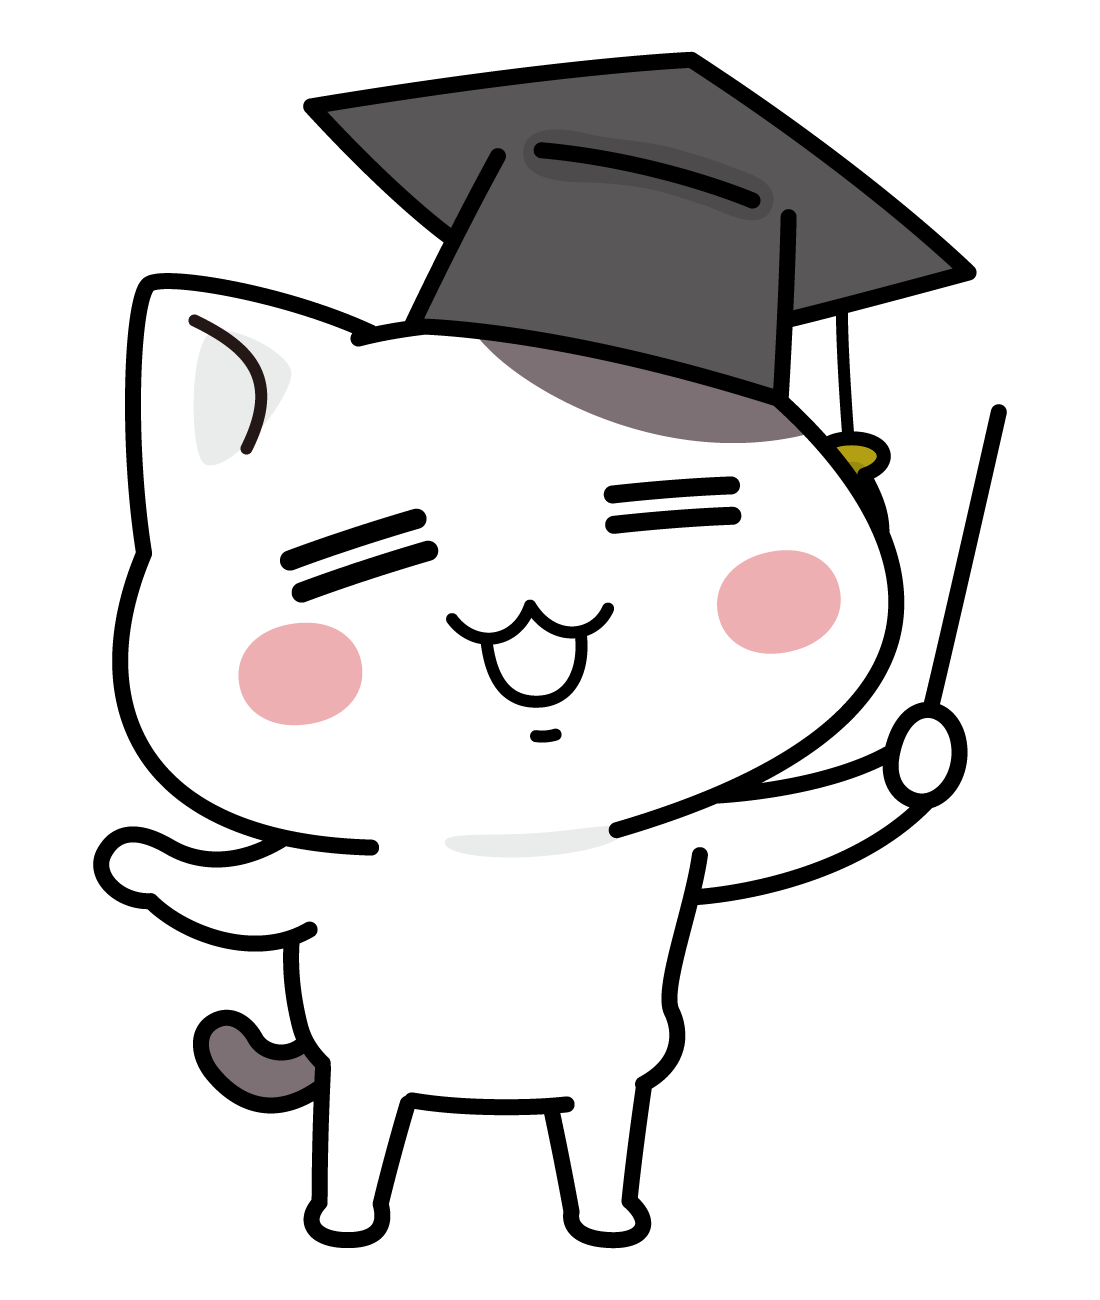 学士帽を被ったネコのイラスト